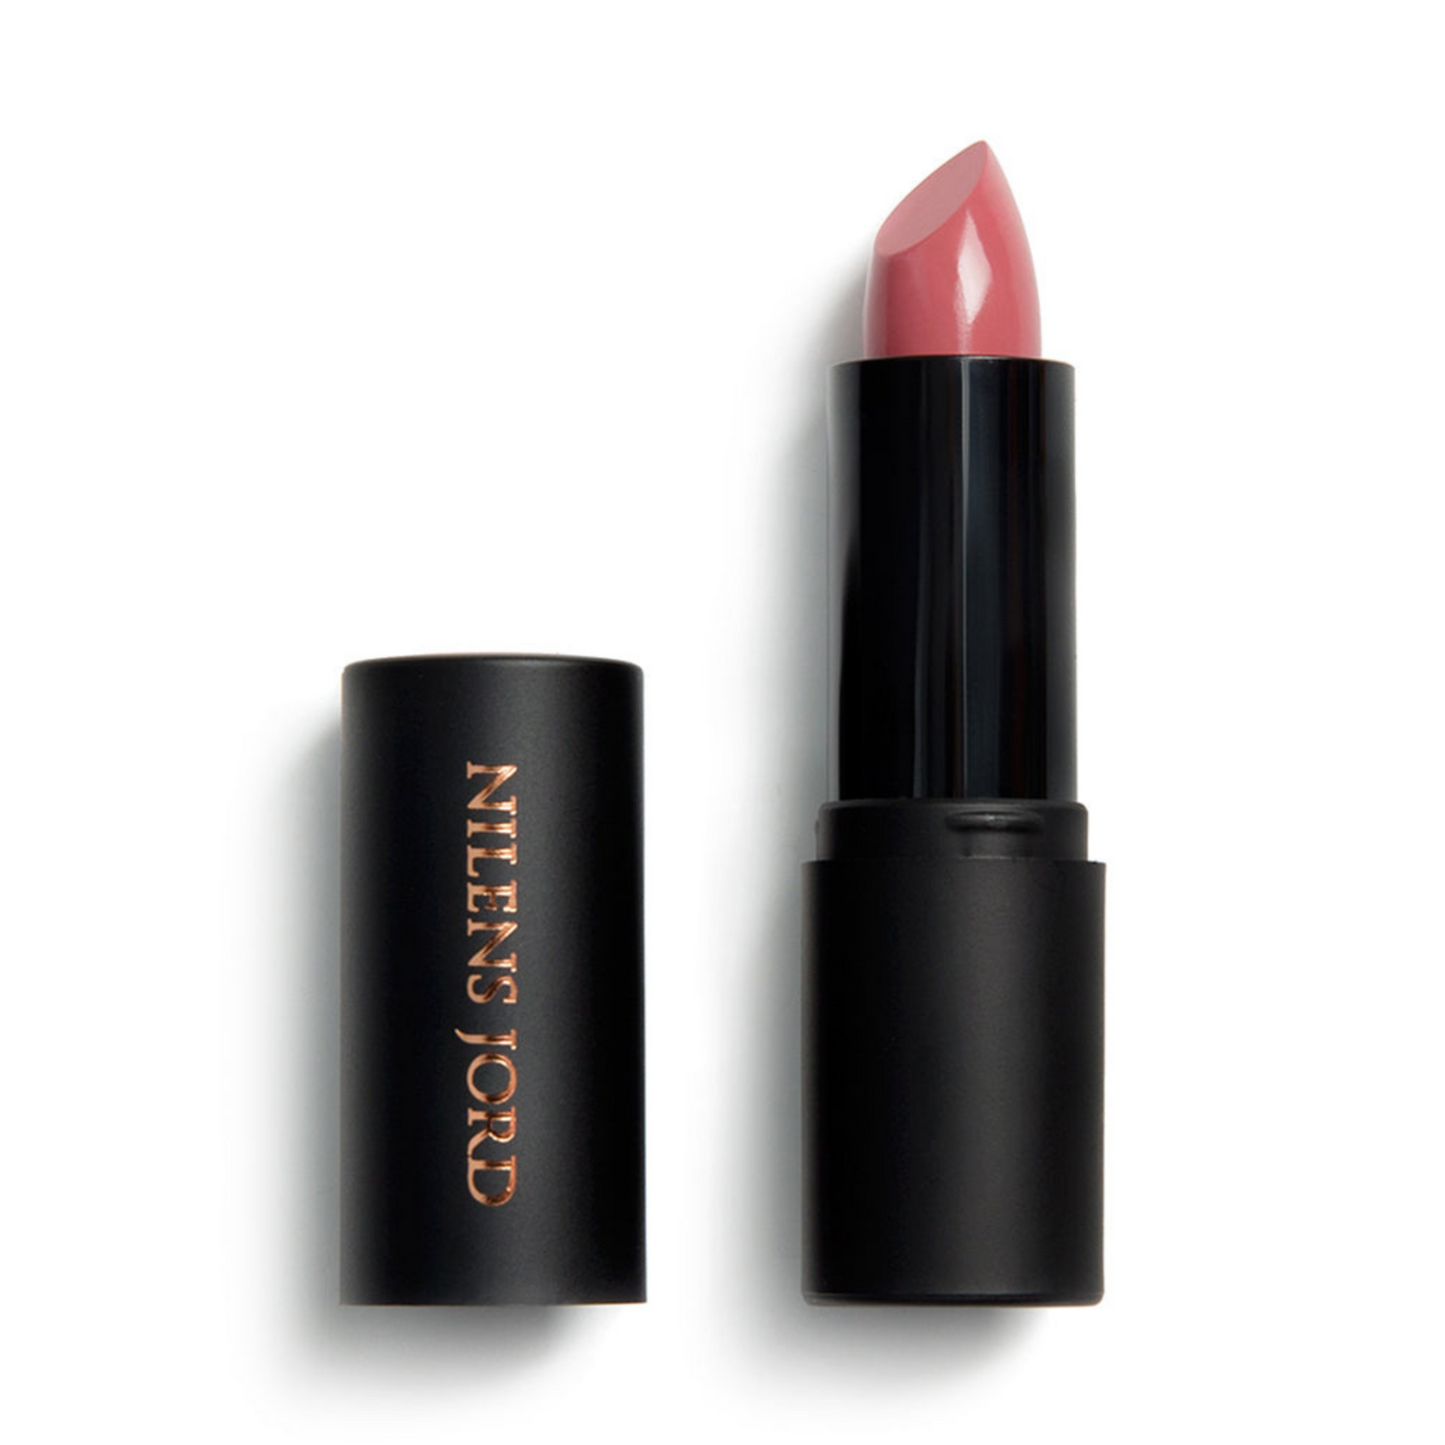 Lipstick - Full Coverage